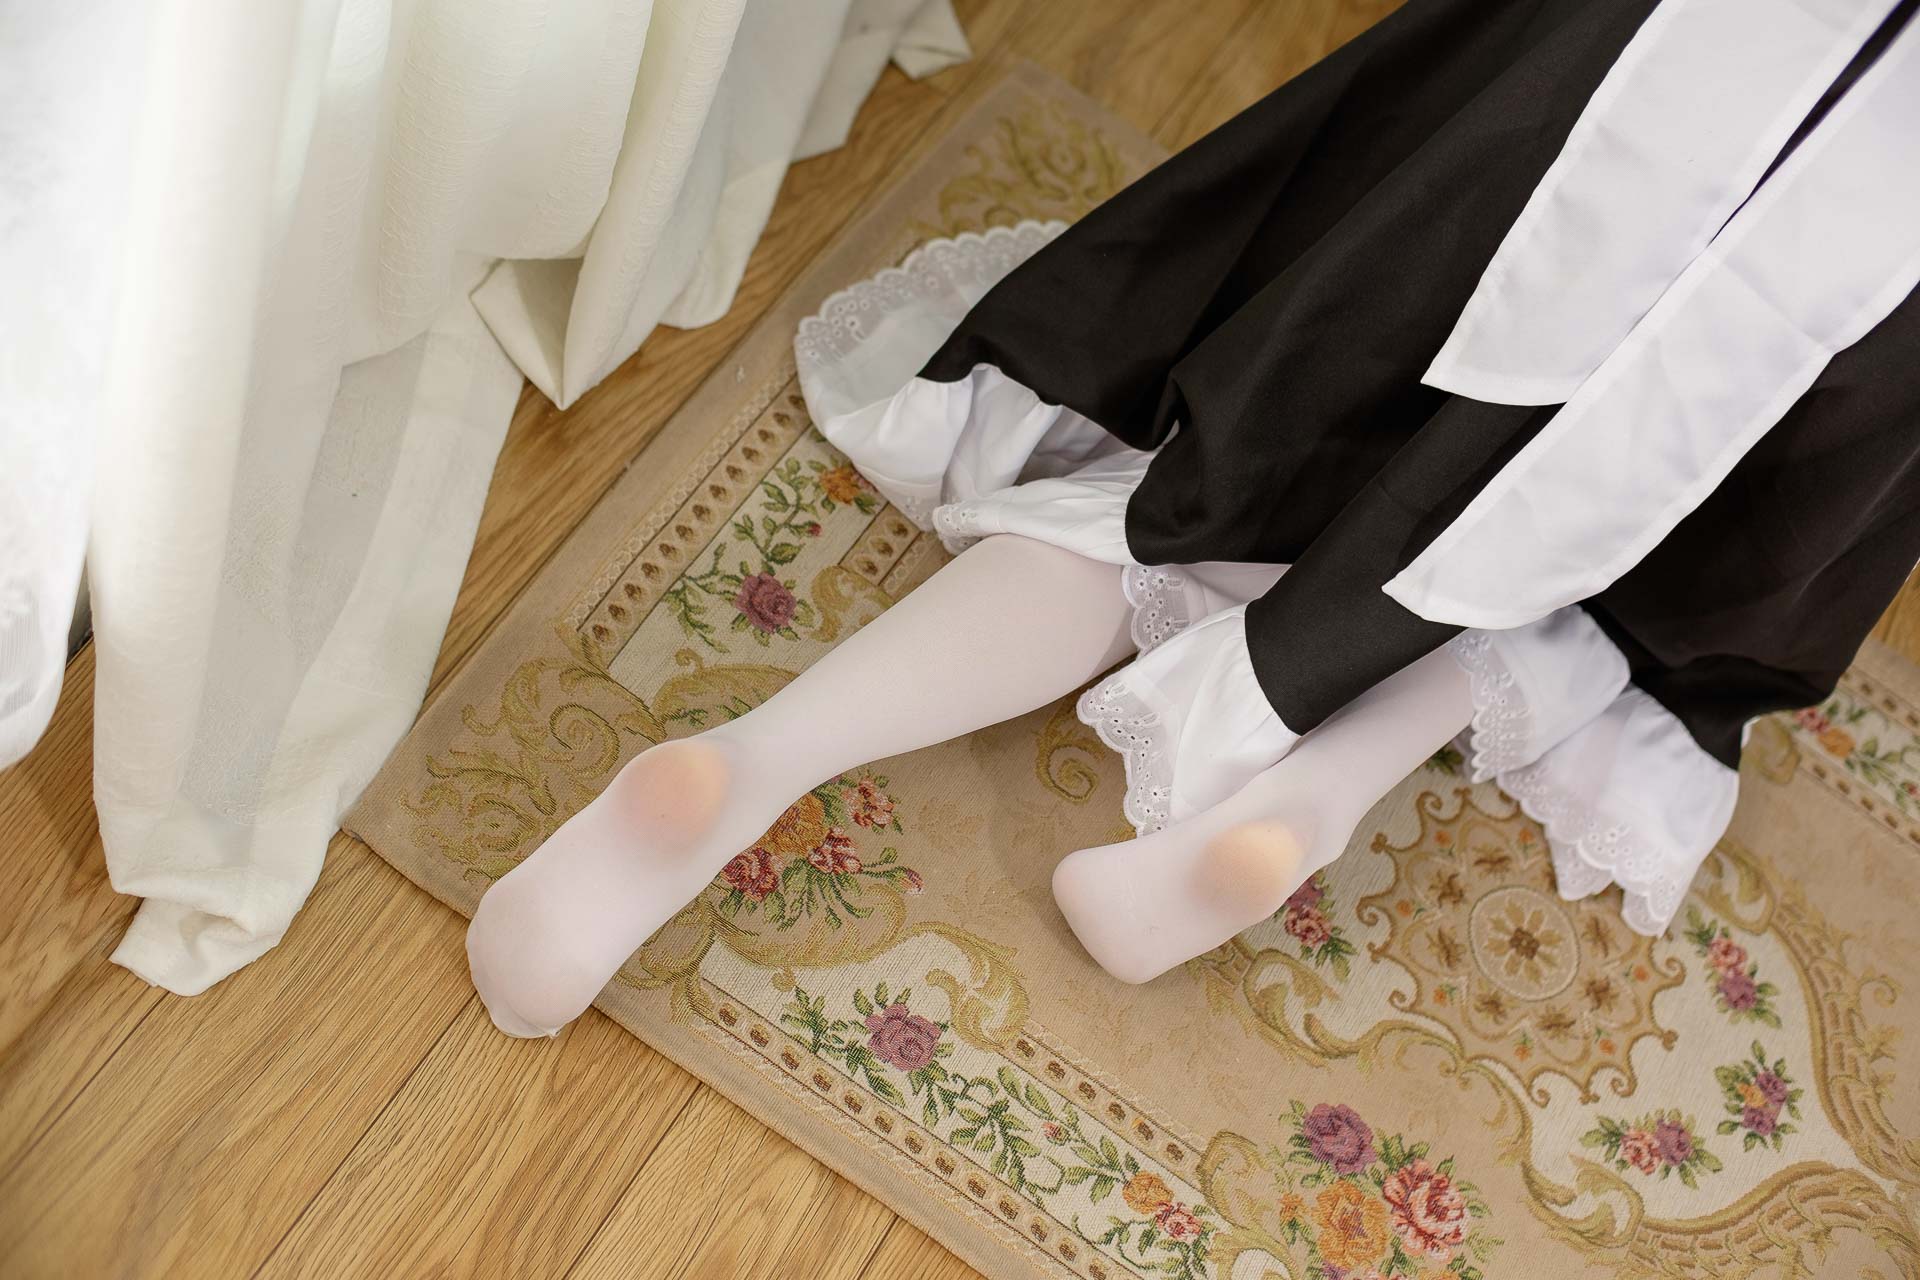 【SSR系列】森萝财团写真 SSR-005 优雅白丝袜女仆装[85图-0视频-476MB] 第4张